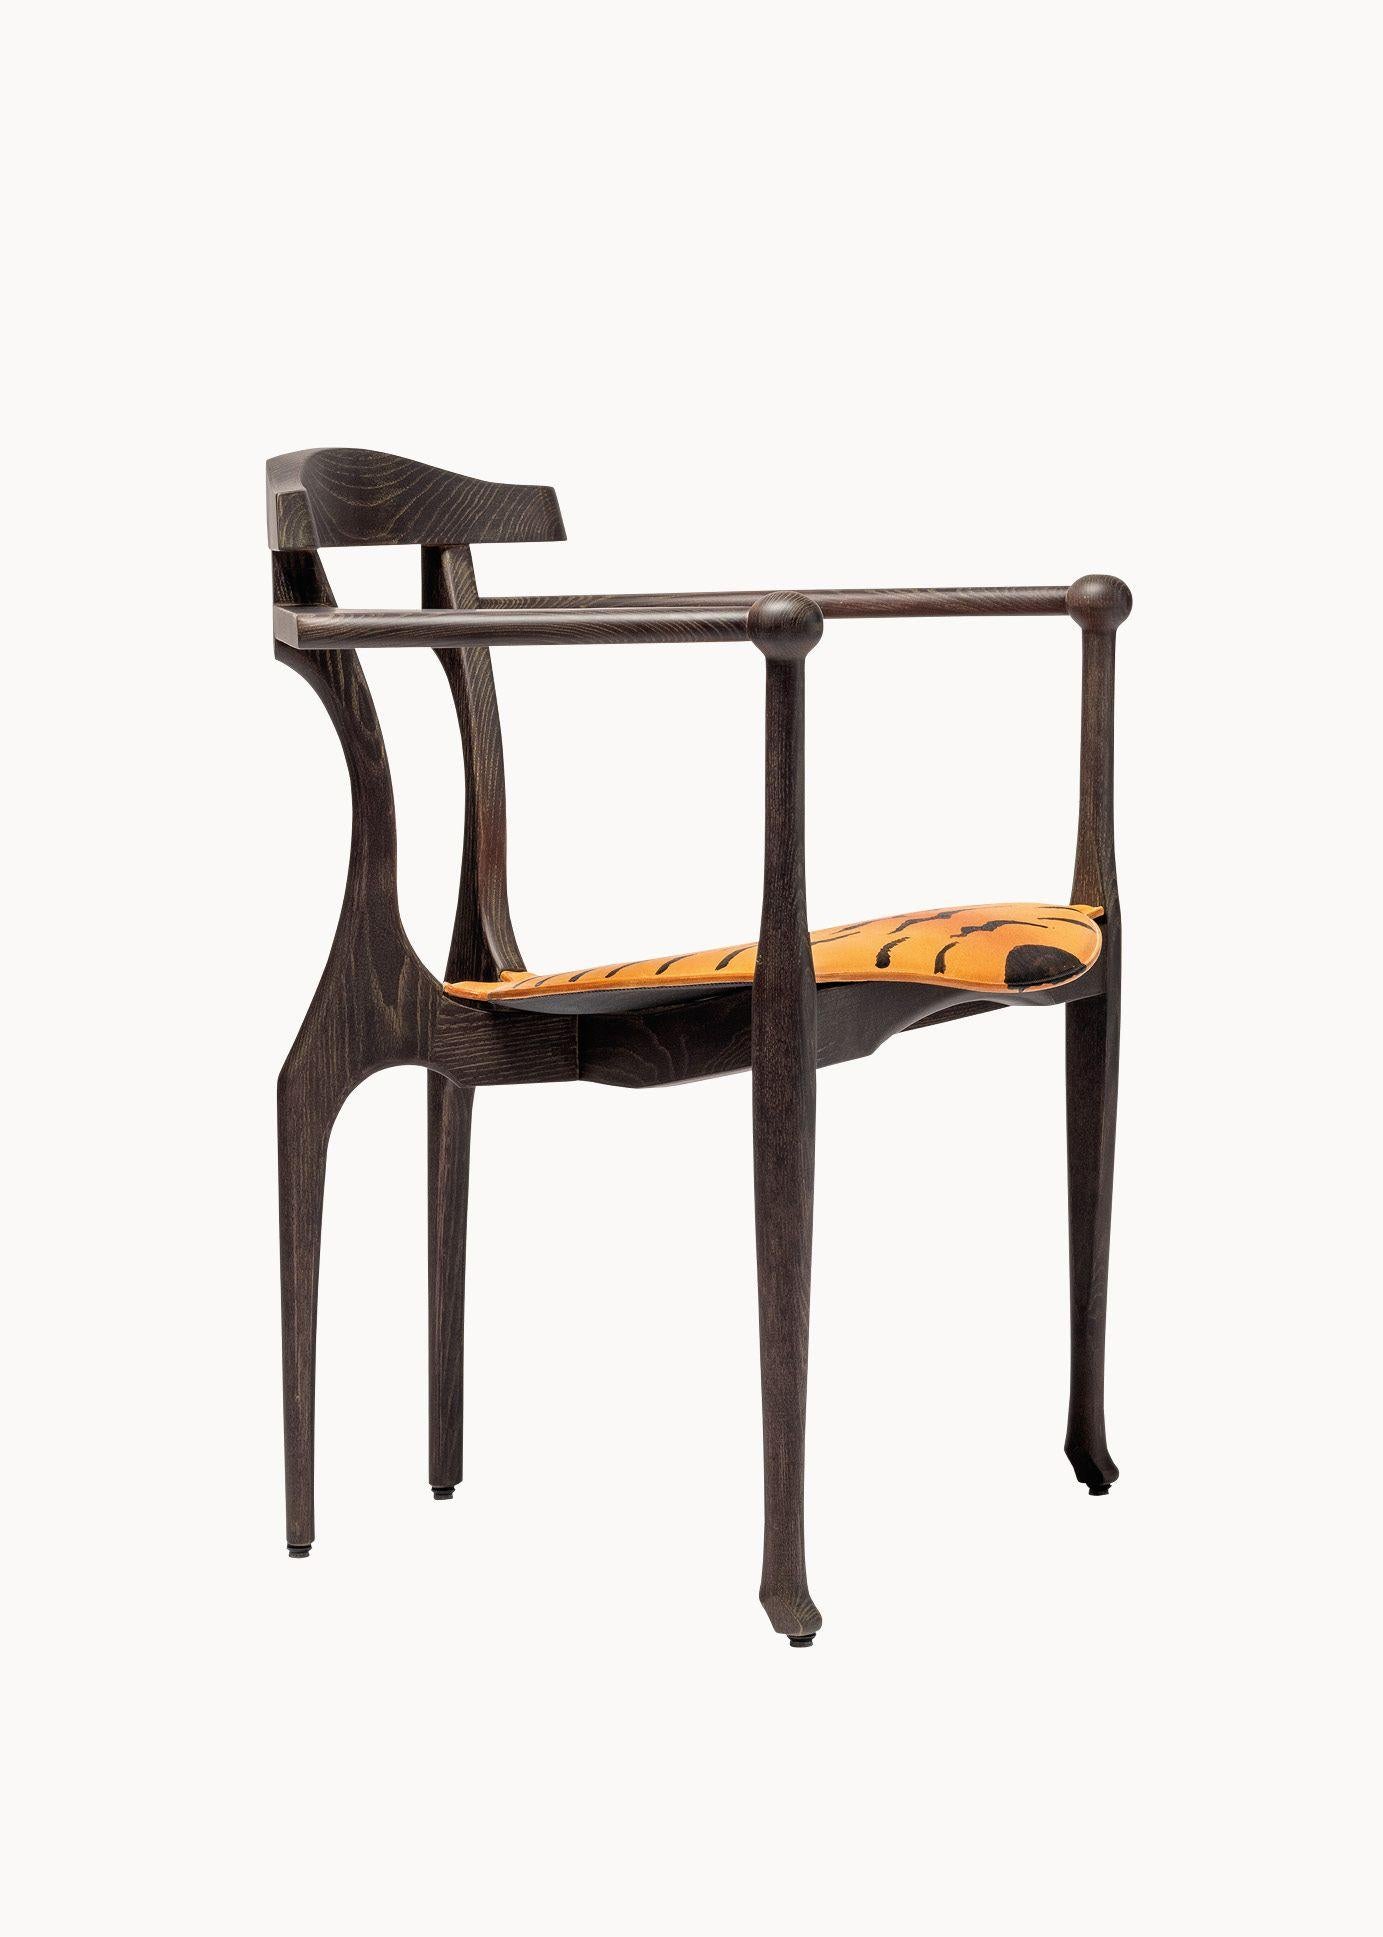 Tiger Art Gaulino Limited Edition Sessel von Oscar Tusquets

Stuhl aus Eschenholz mit dunkel gebeizter und lackierter Patina und einem Sitz aus Naturleder. Auf 50 Exemplare limitierter Sitz, handbemalt mit Tigerfellmustern von Oscar Tusquets.

Eine